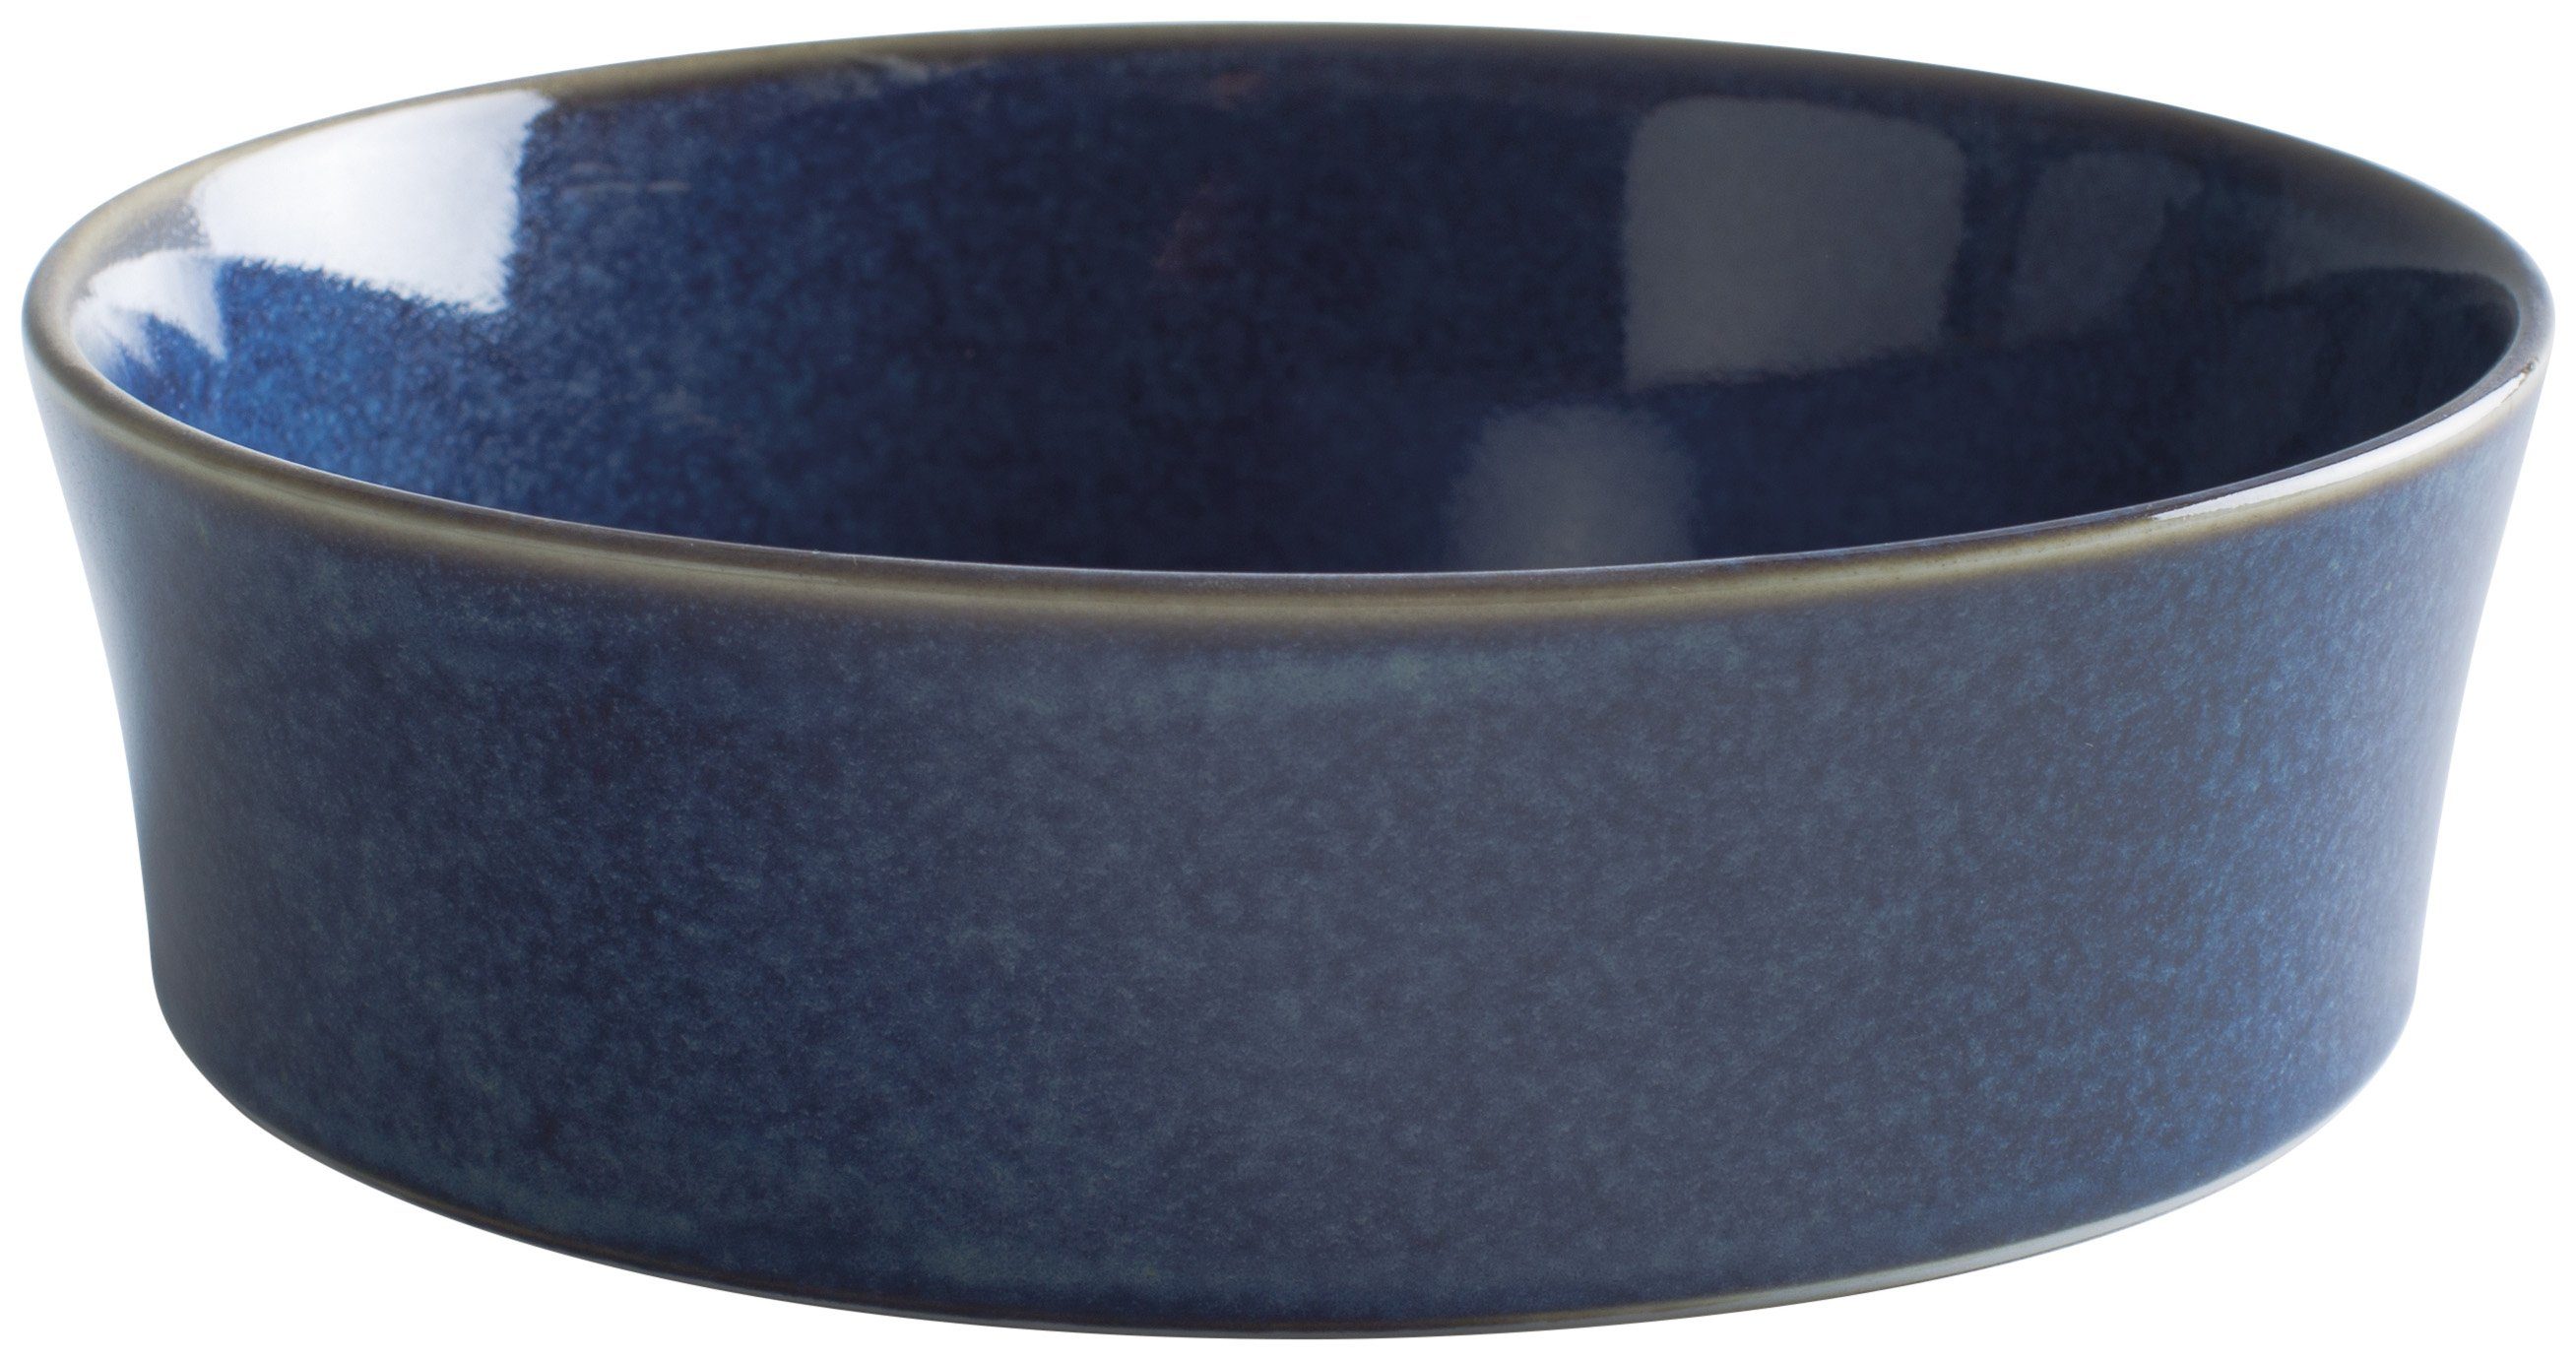 Kahla Auflaufform Homestyle rund, Porzellan, Handglasiert, Made in Germany atlantic blue